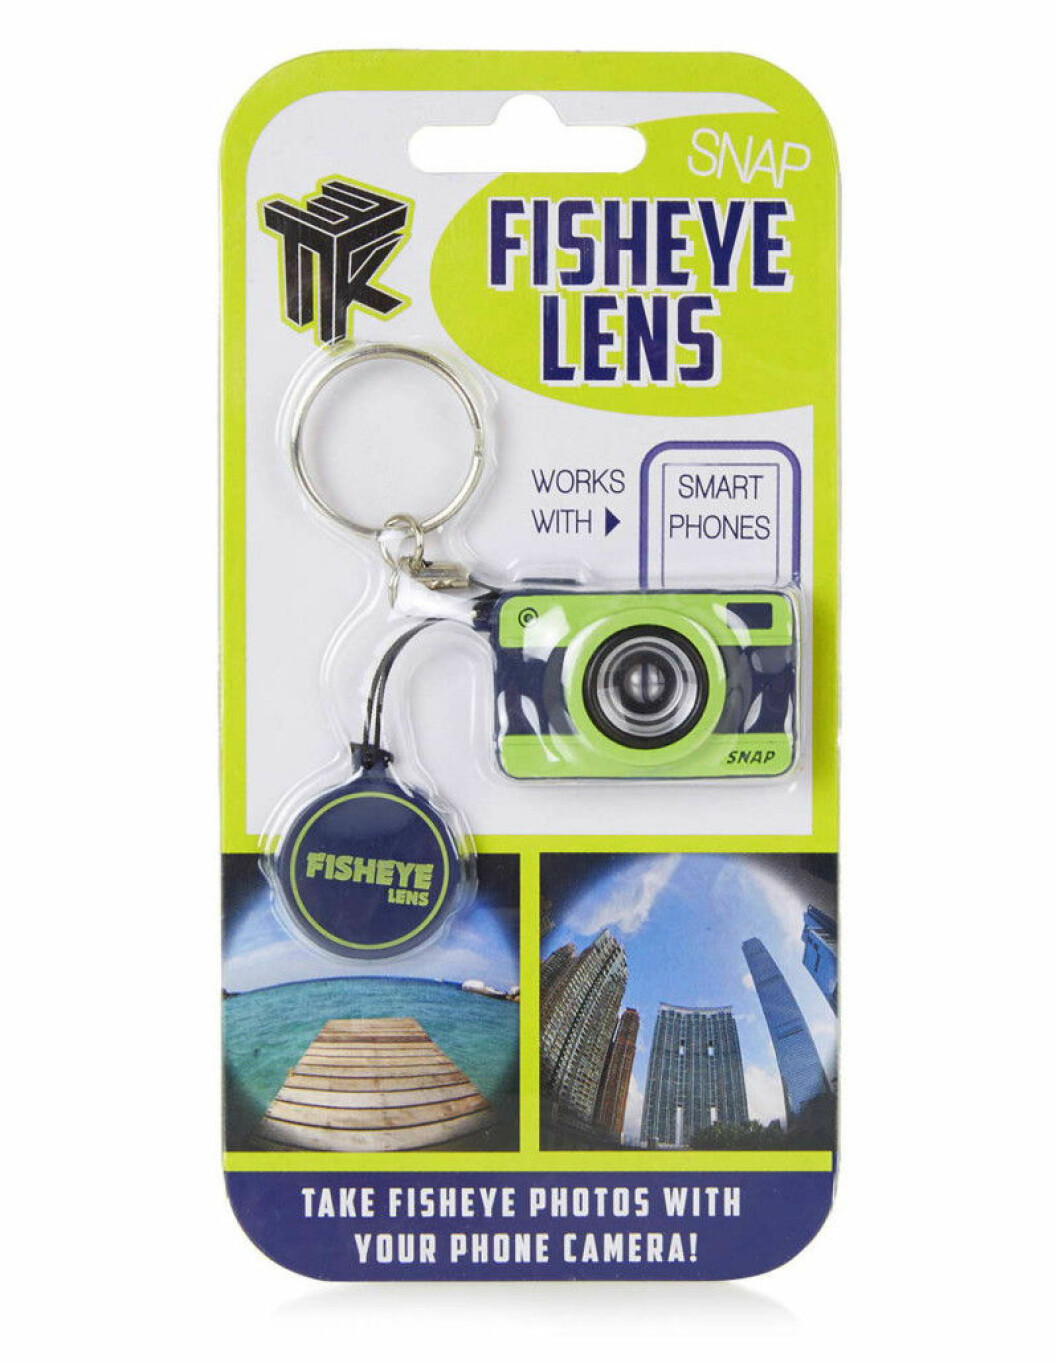 fisheye lens iphone